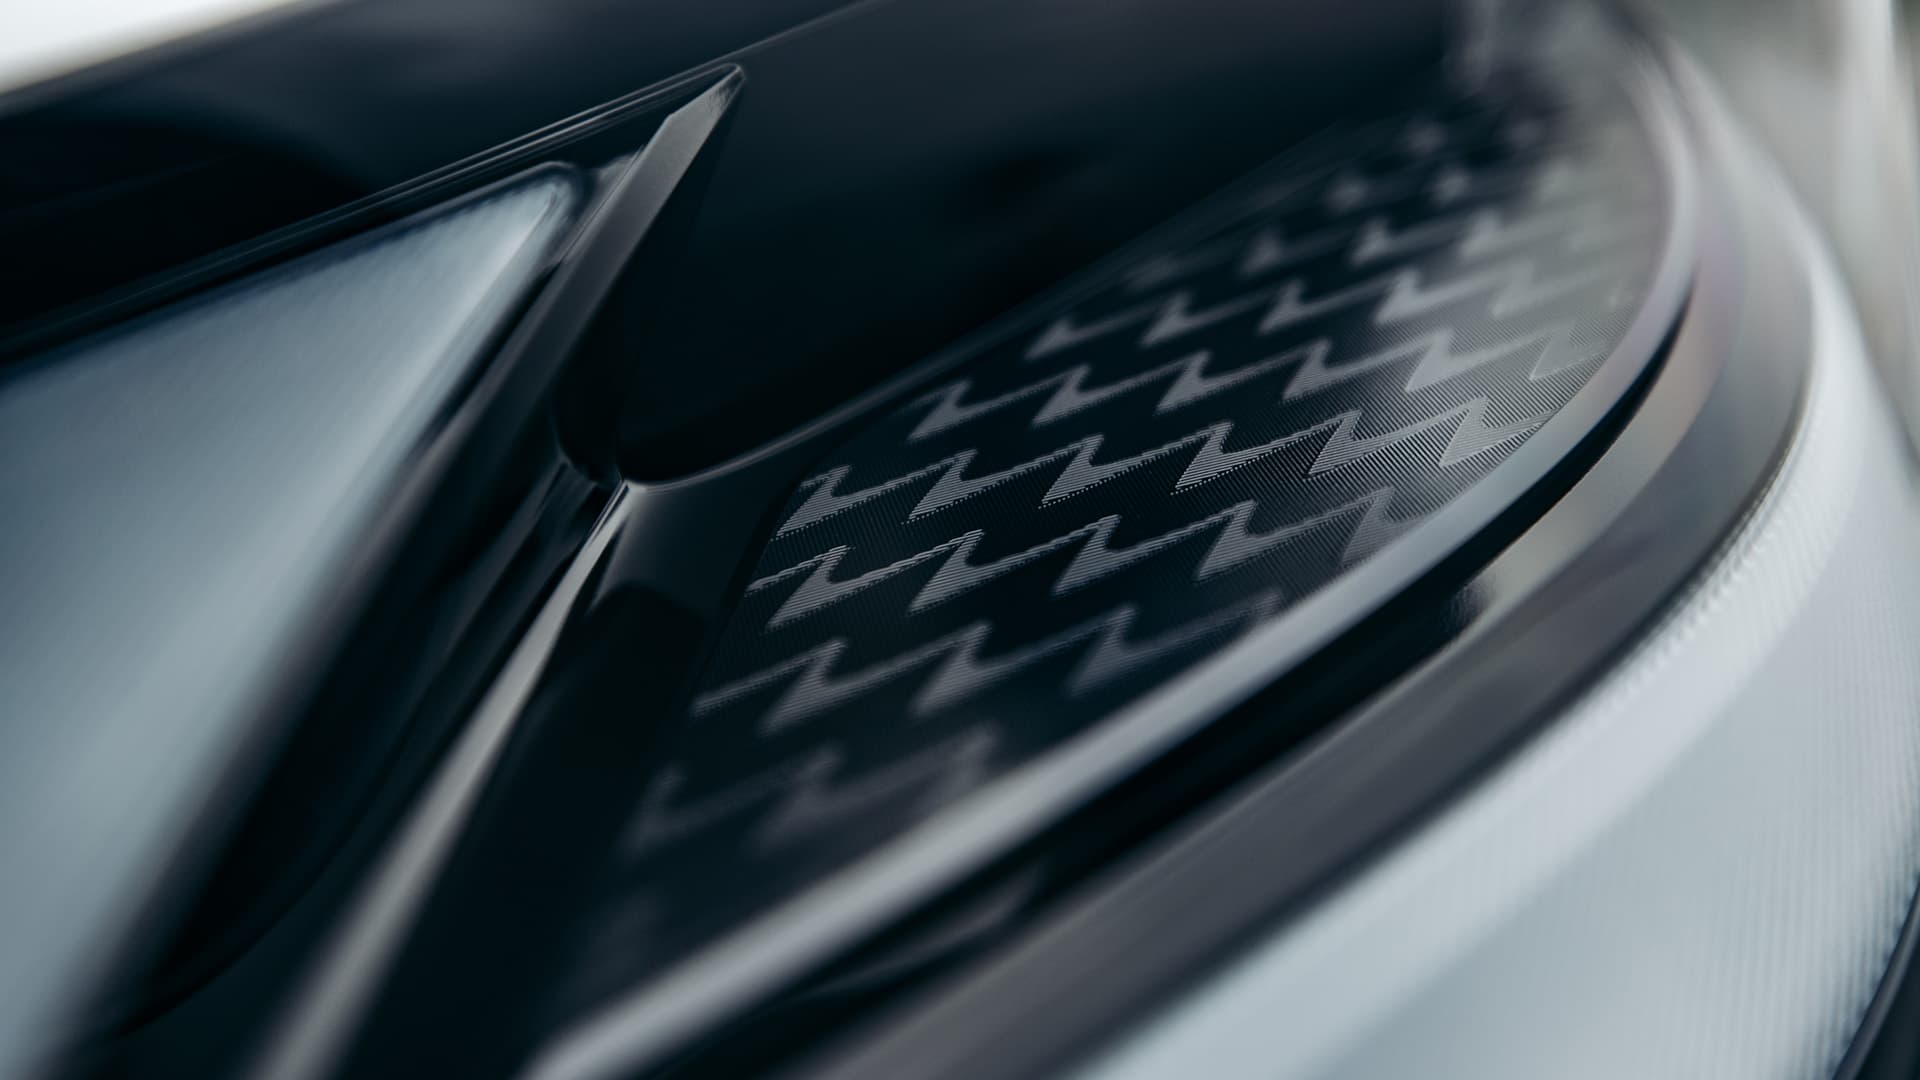 Những người thợ thủ công bậc thầy của Lexus chế tác nên các chi tiết của chiếc xe bằng sự chuẩn xác tuyệt đối.